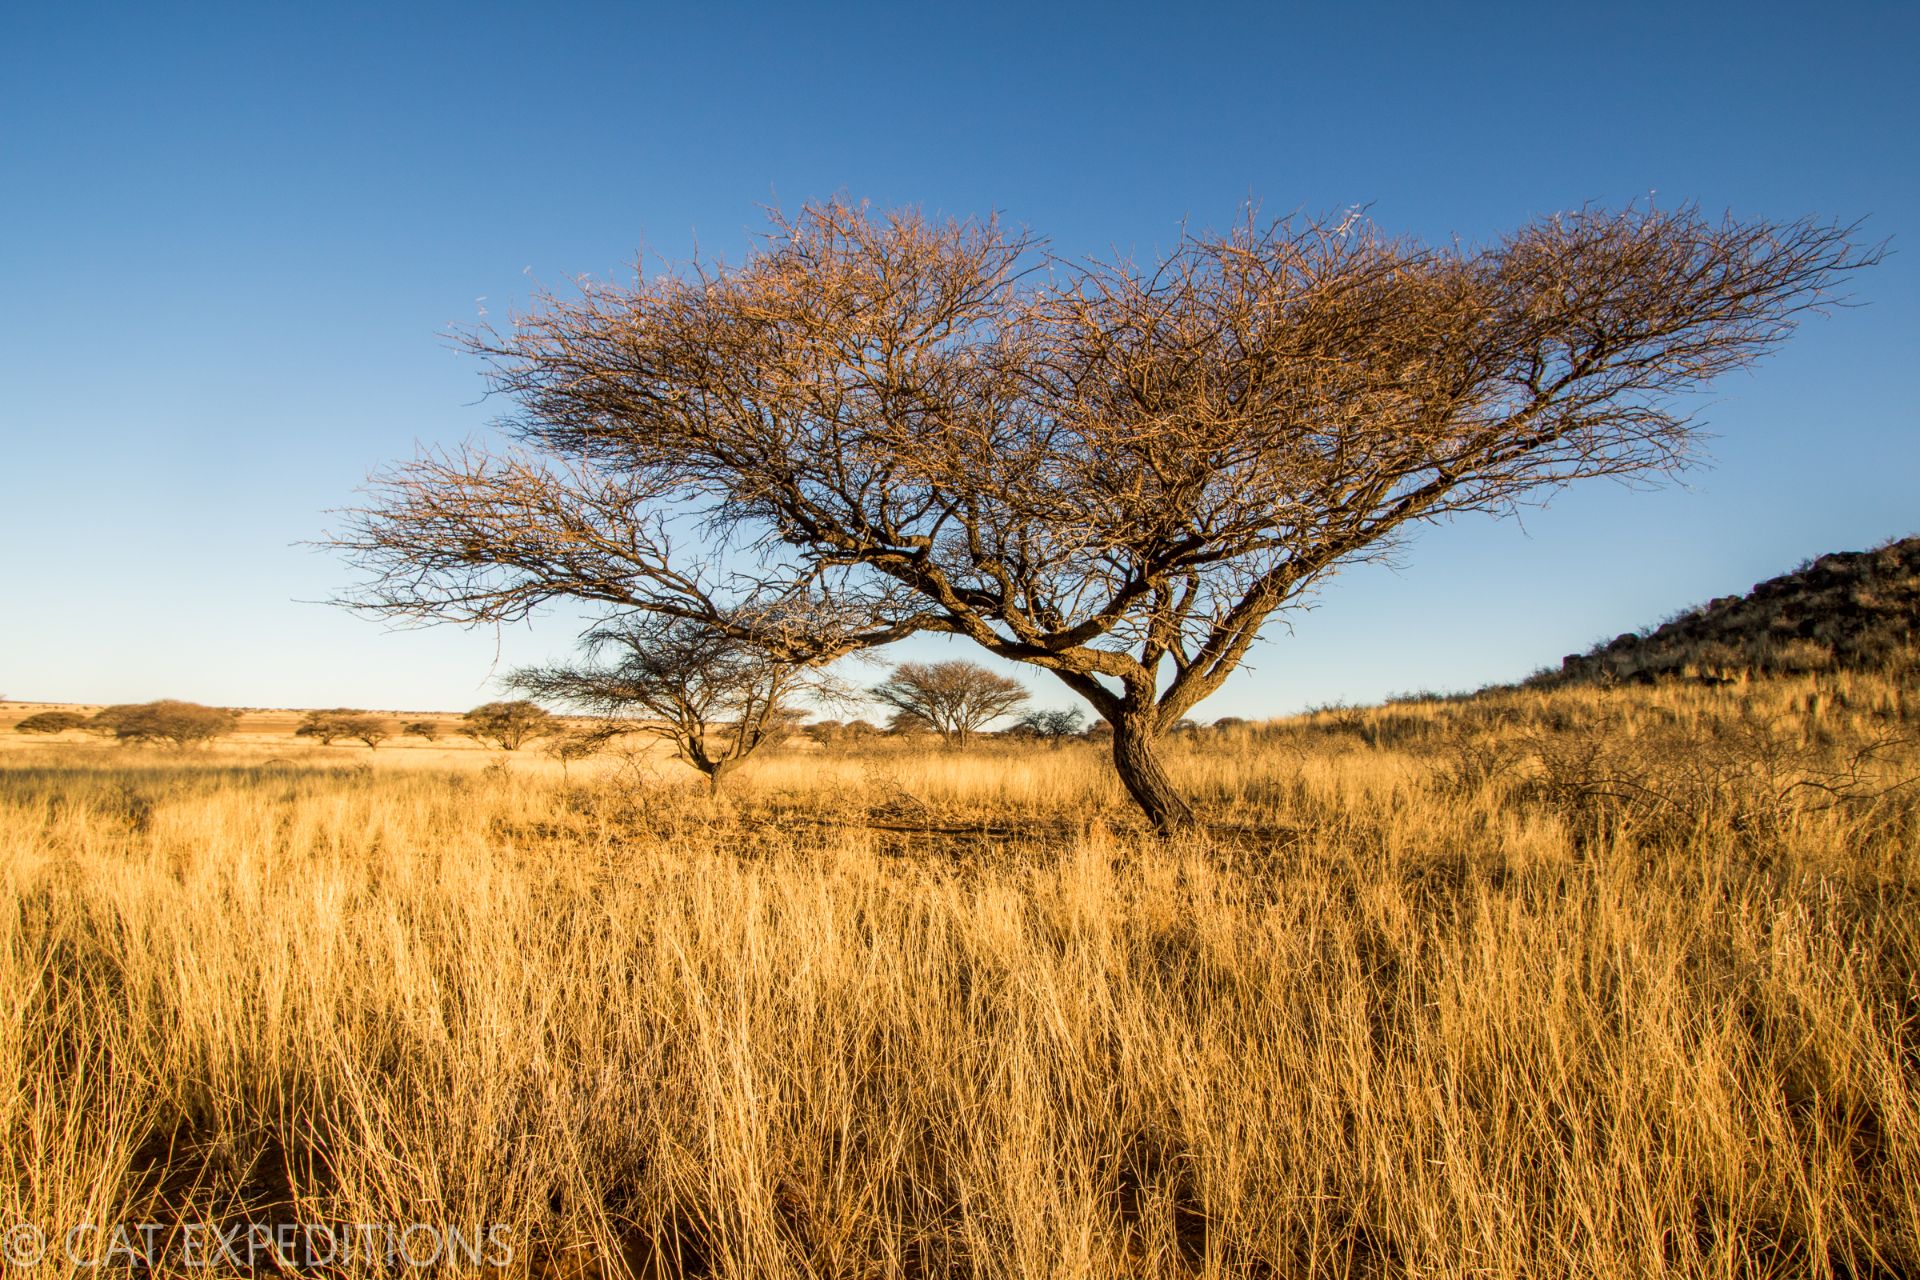 Grassland in Africa